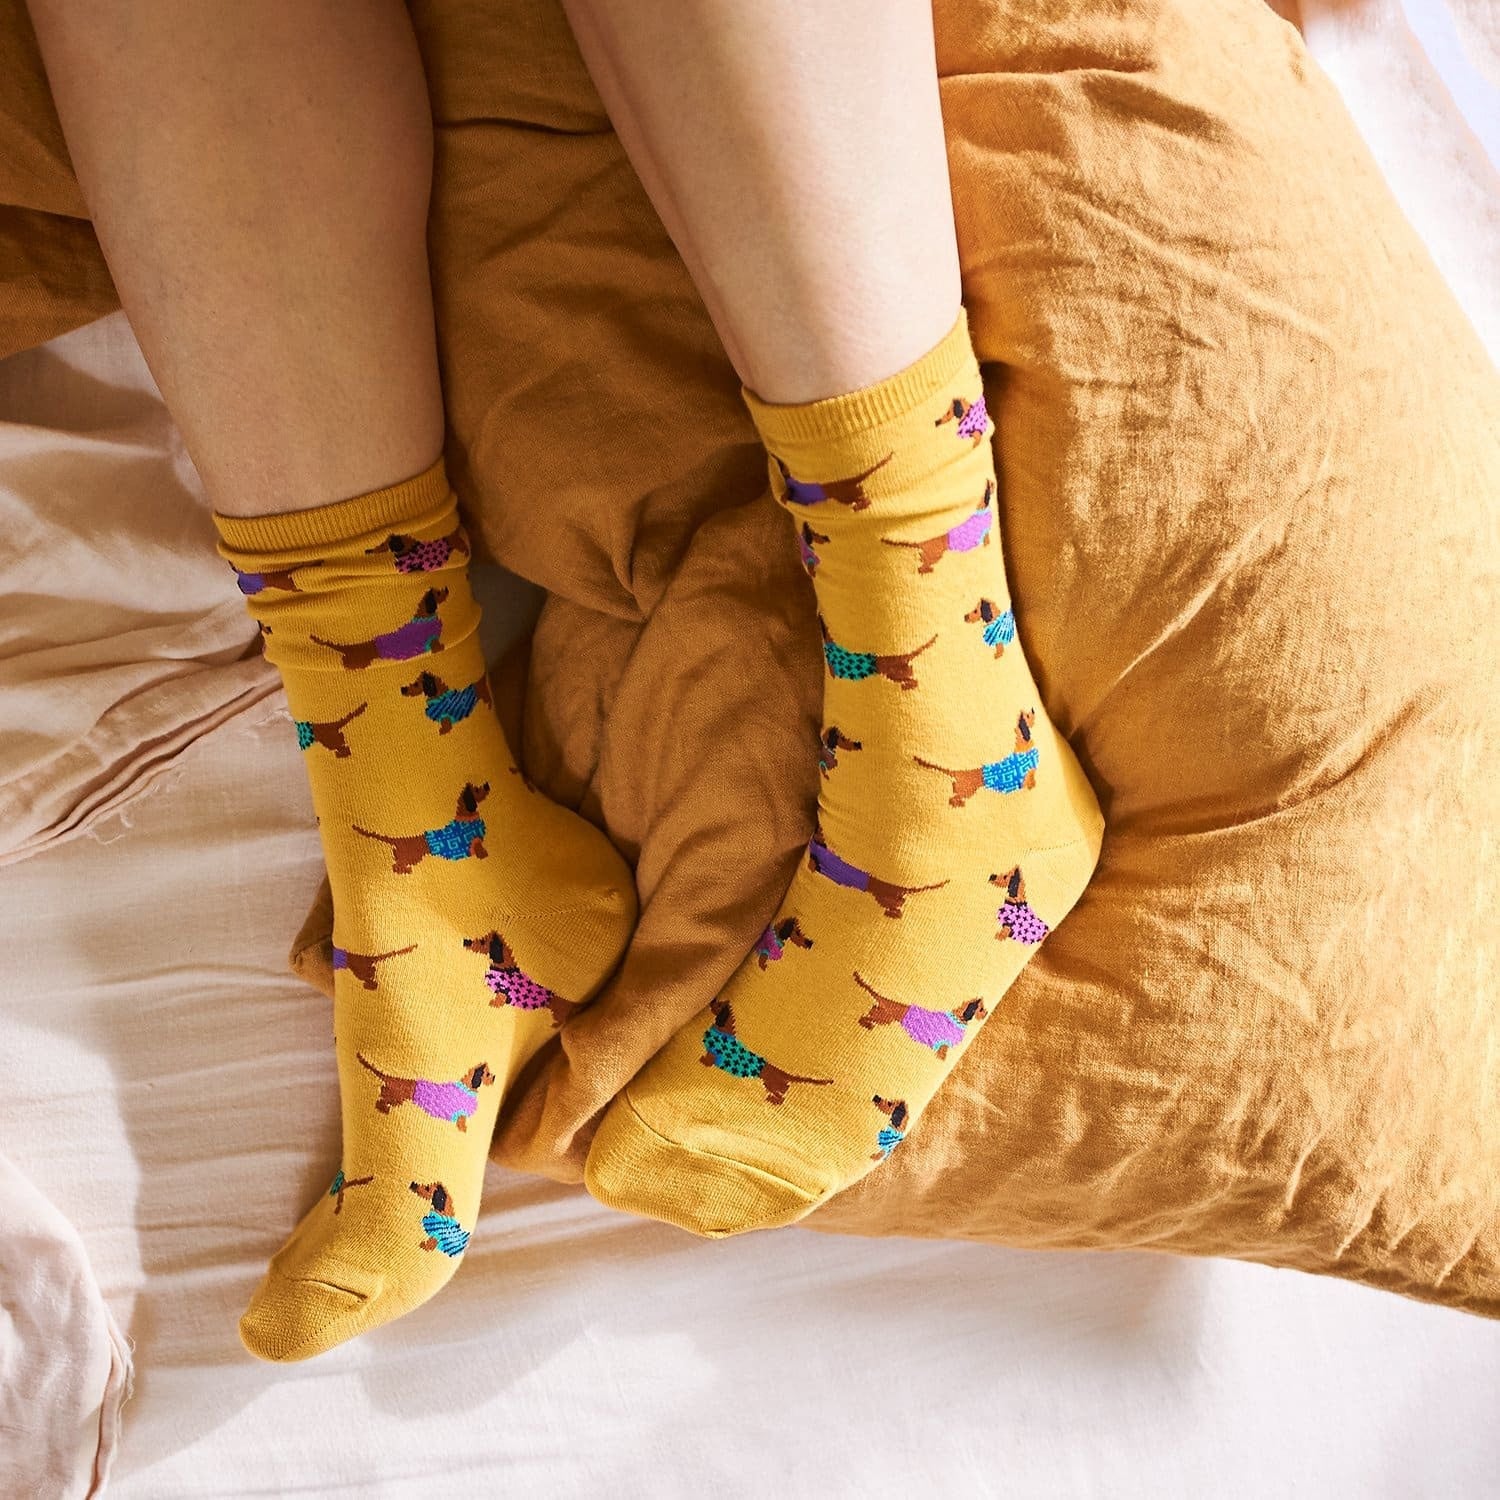 Haute Dog - Women's Novelty Socks